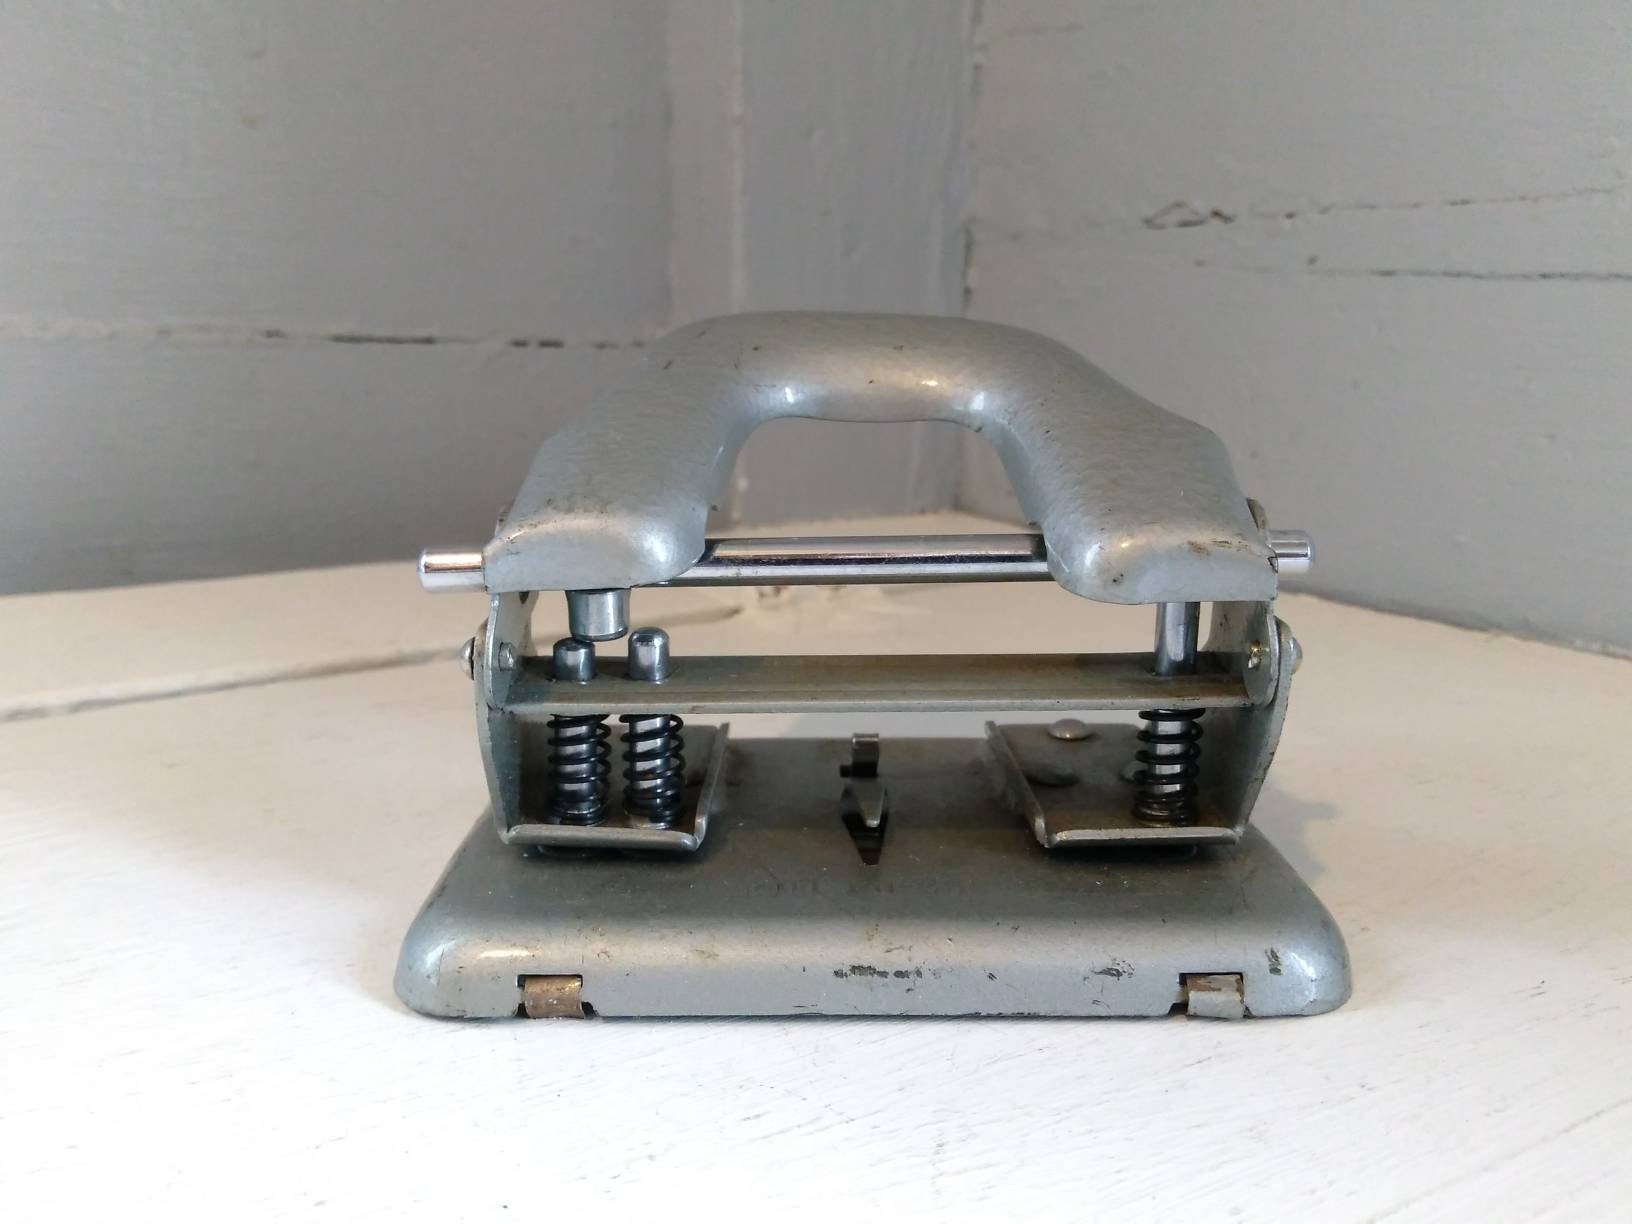 Vintage Rex Two Hole Punch, Vintage Desk Accessories